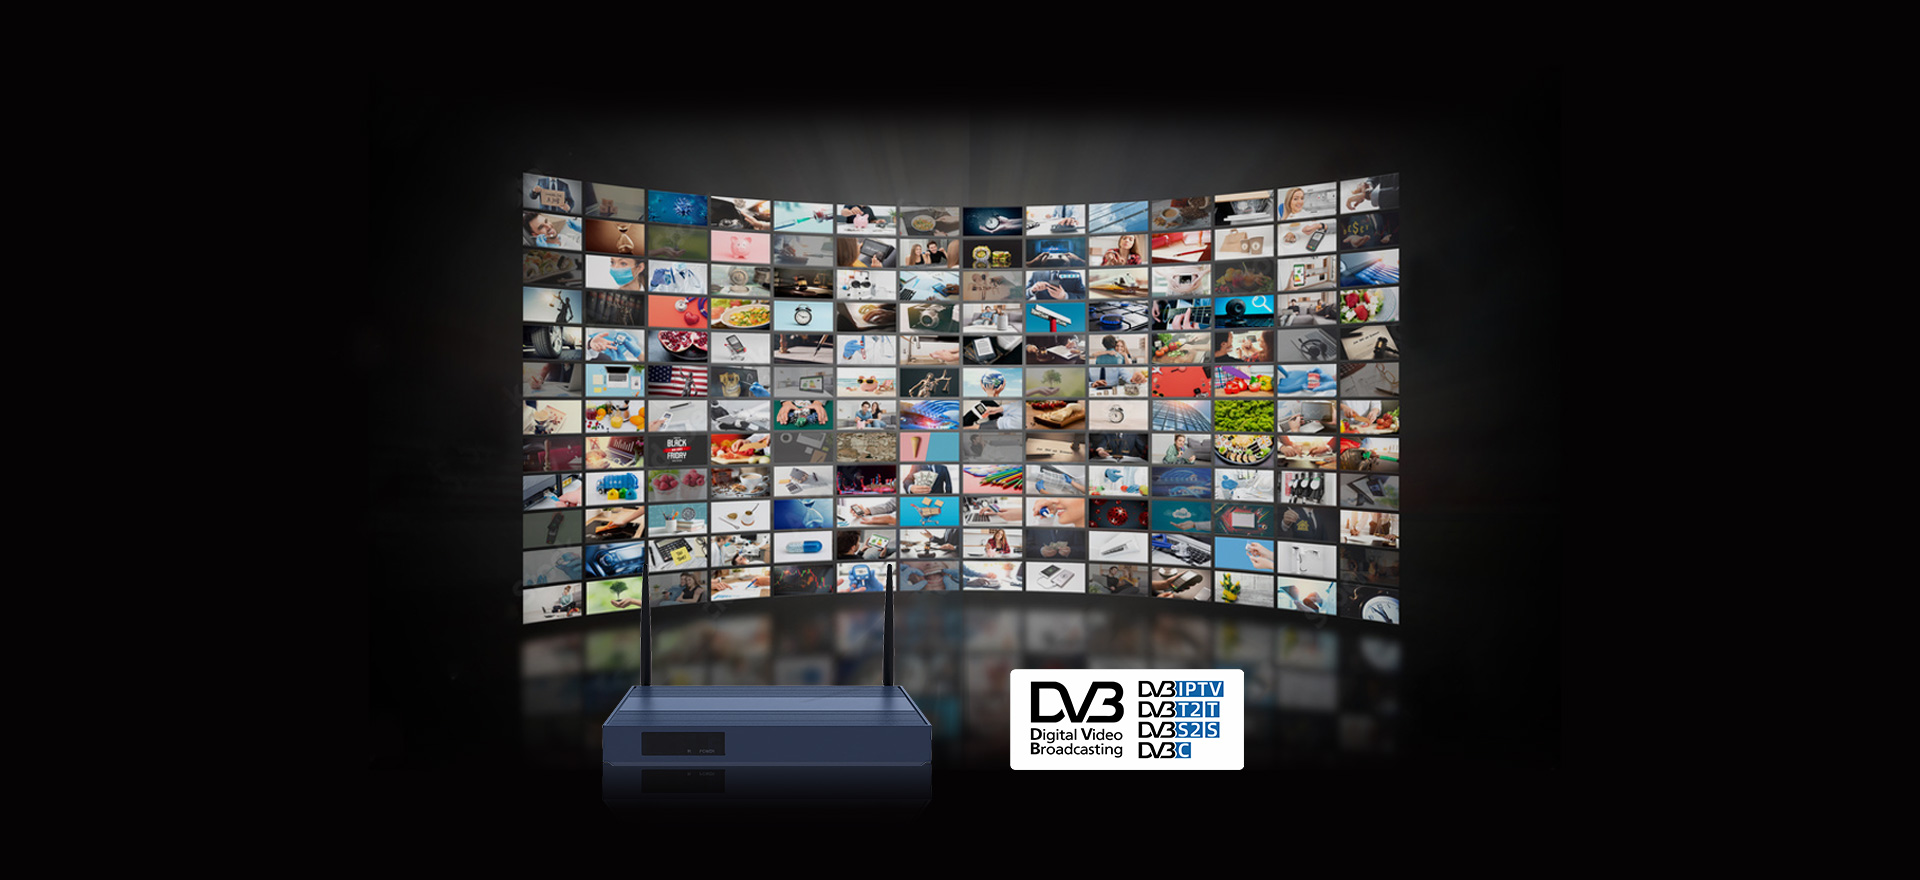 KW1 支持 DVB-S/S2 DVB-T/T2 DVB-C 标准